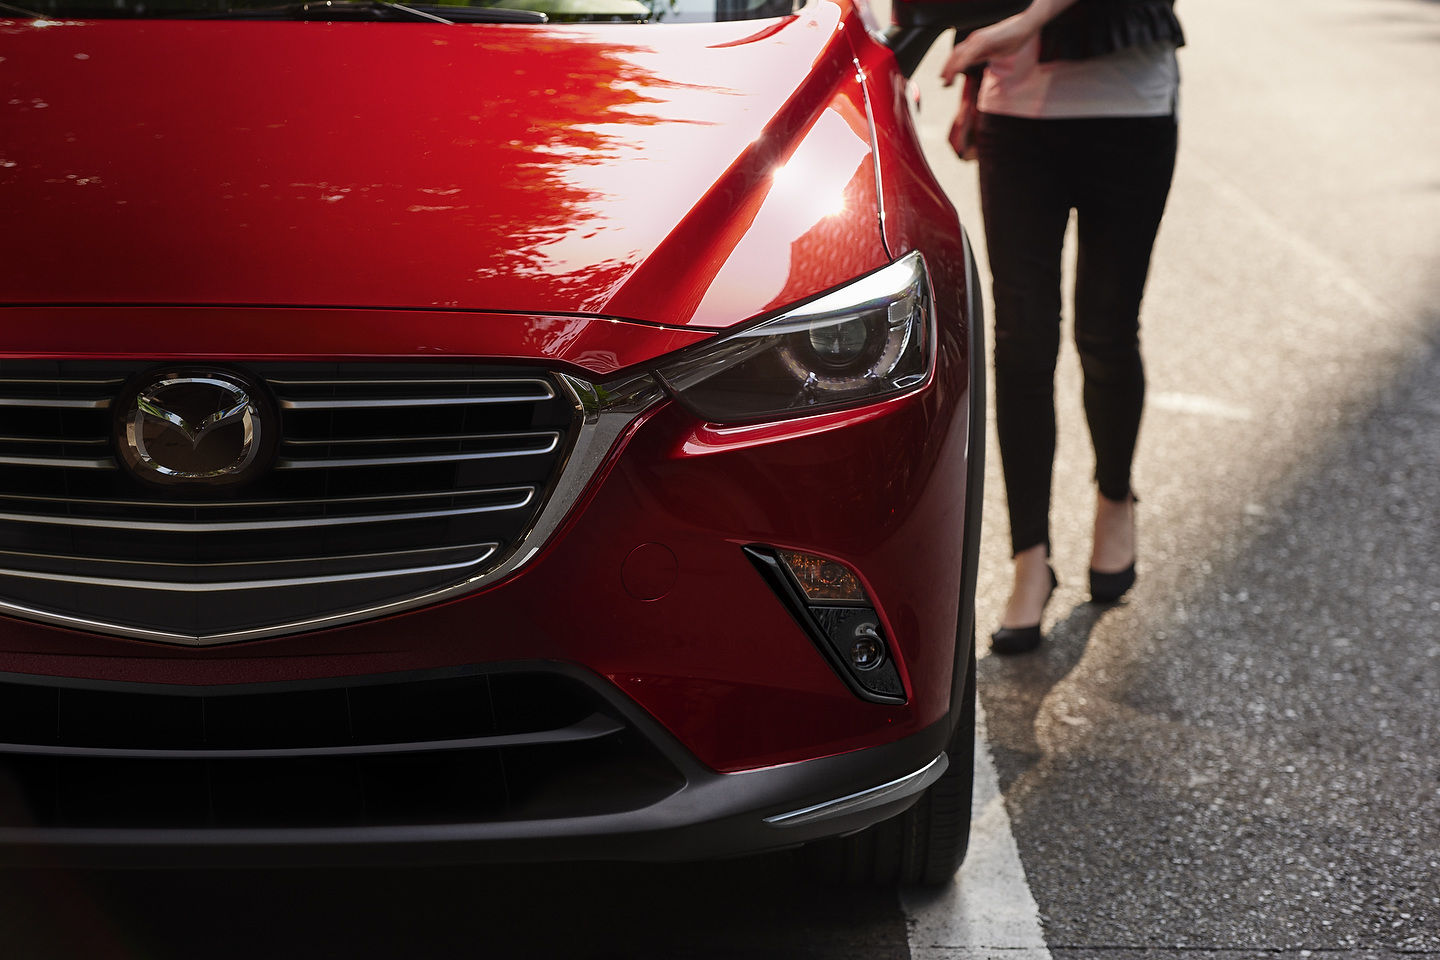 Mazda Canada Sales Continue to Increase